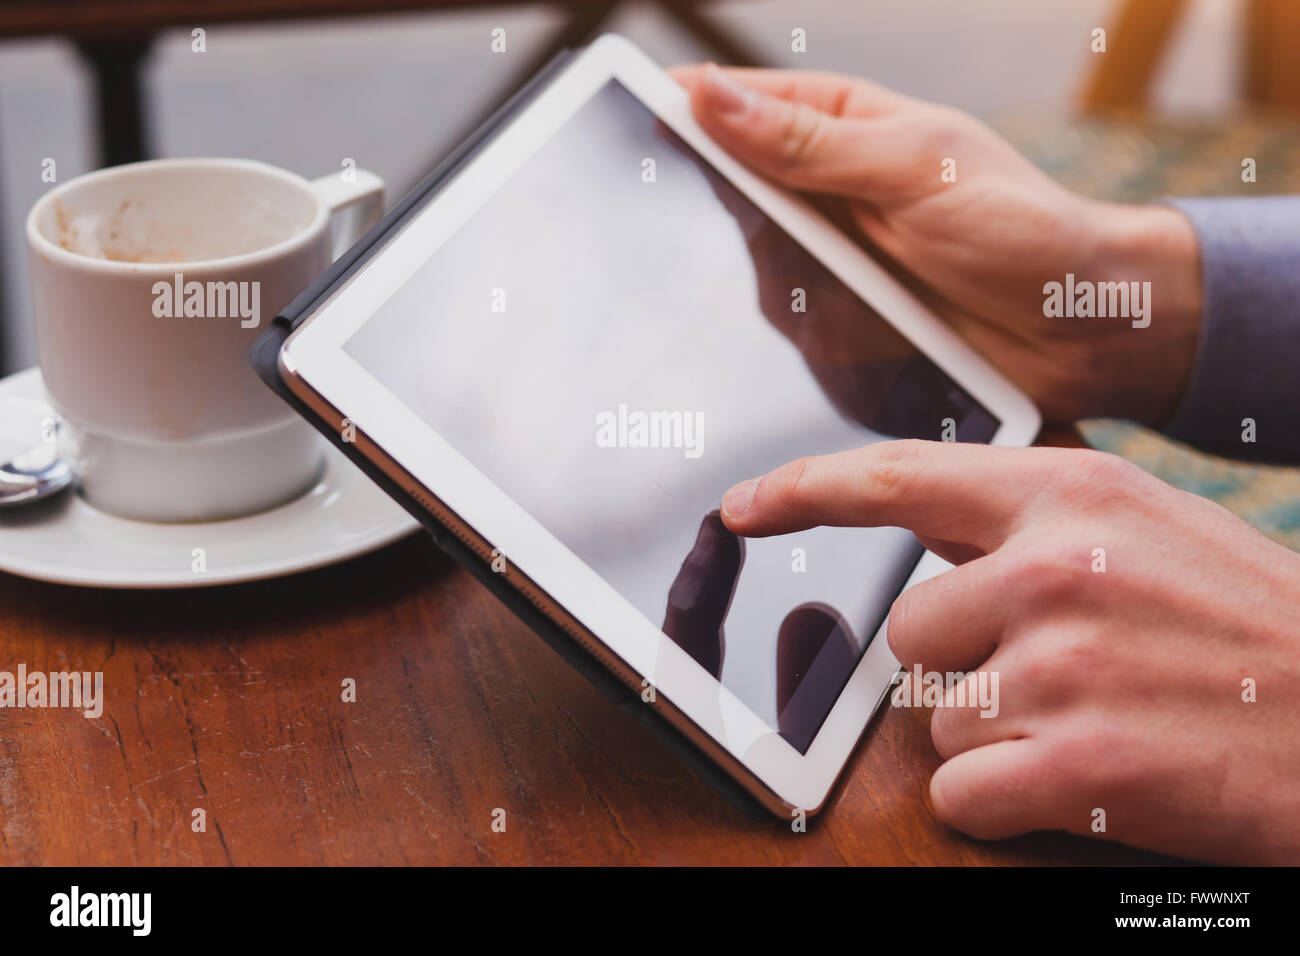 Utilizzo di internet su tablet in cafe, il controllo della posta elettronica e le reti sociali sul touchpad, primo piano del dito Foto Stock